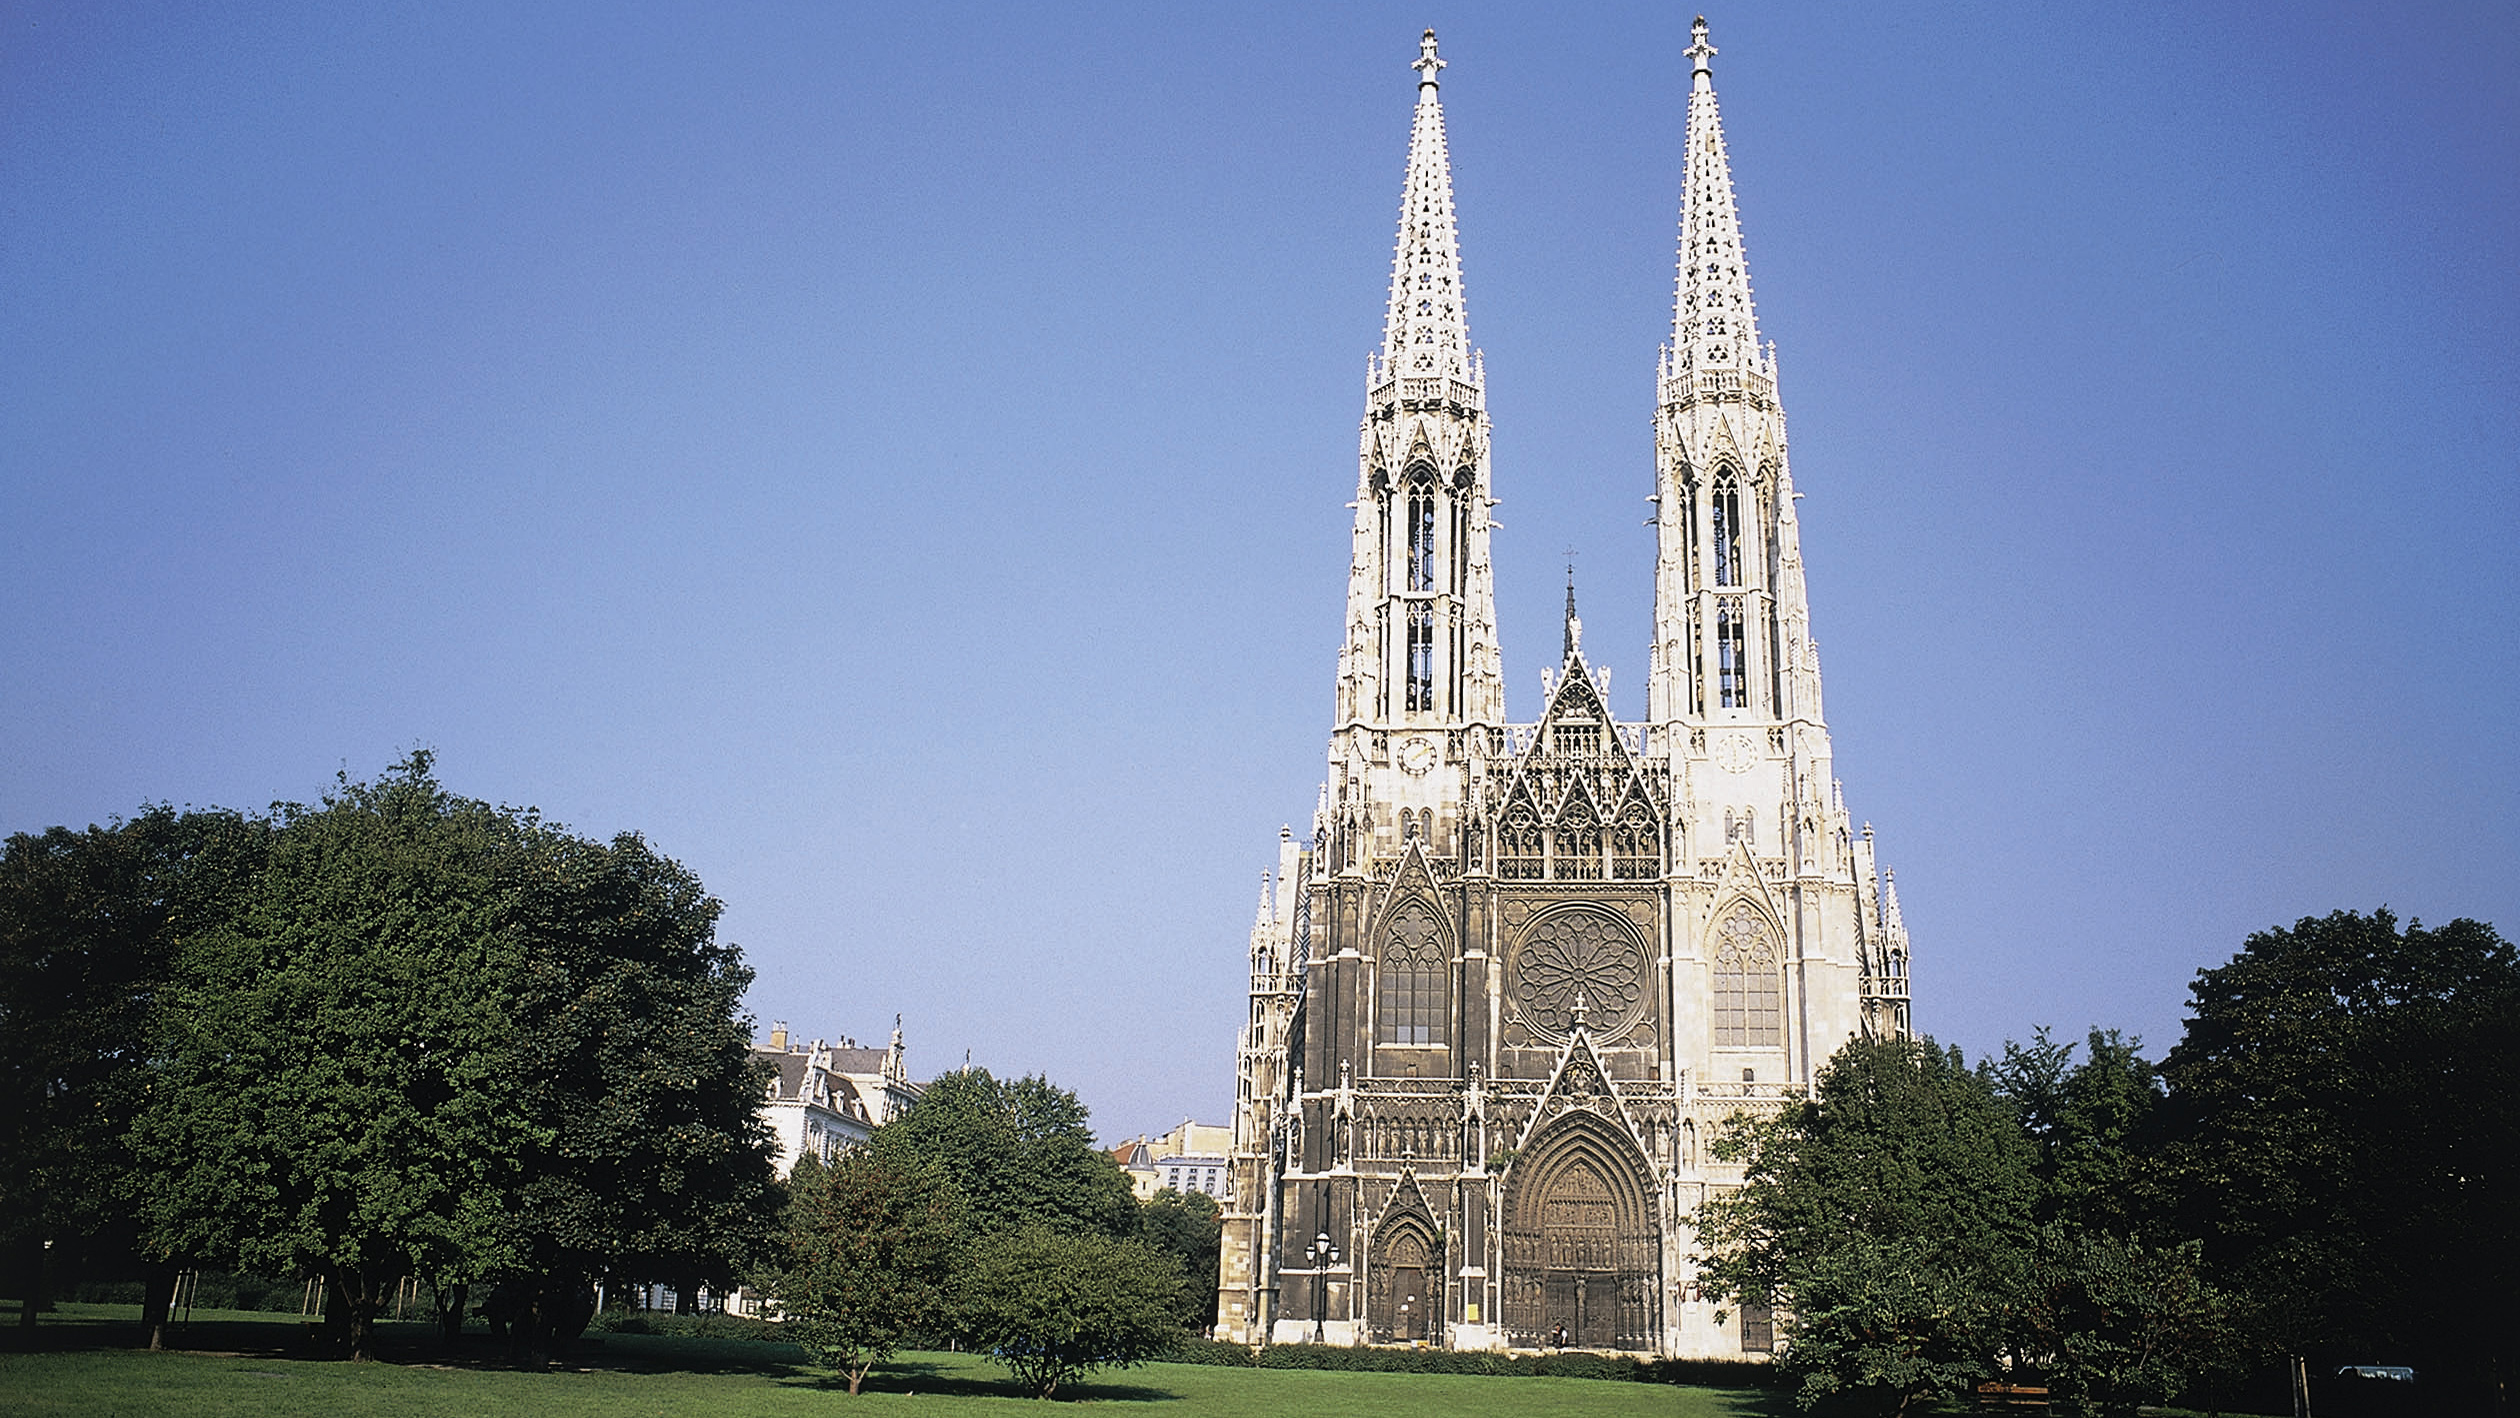 Frontalansicht der Votivkirche in Wien vom Sigmund Freud Park aus gesehen.